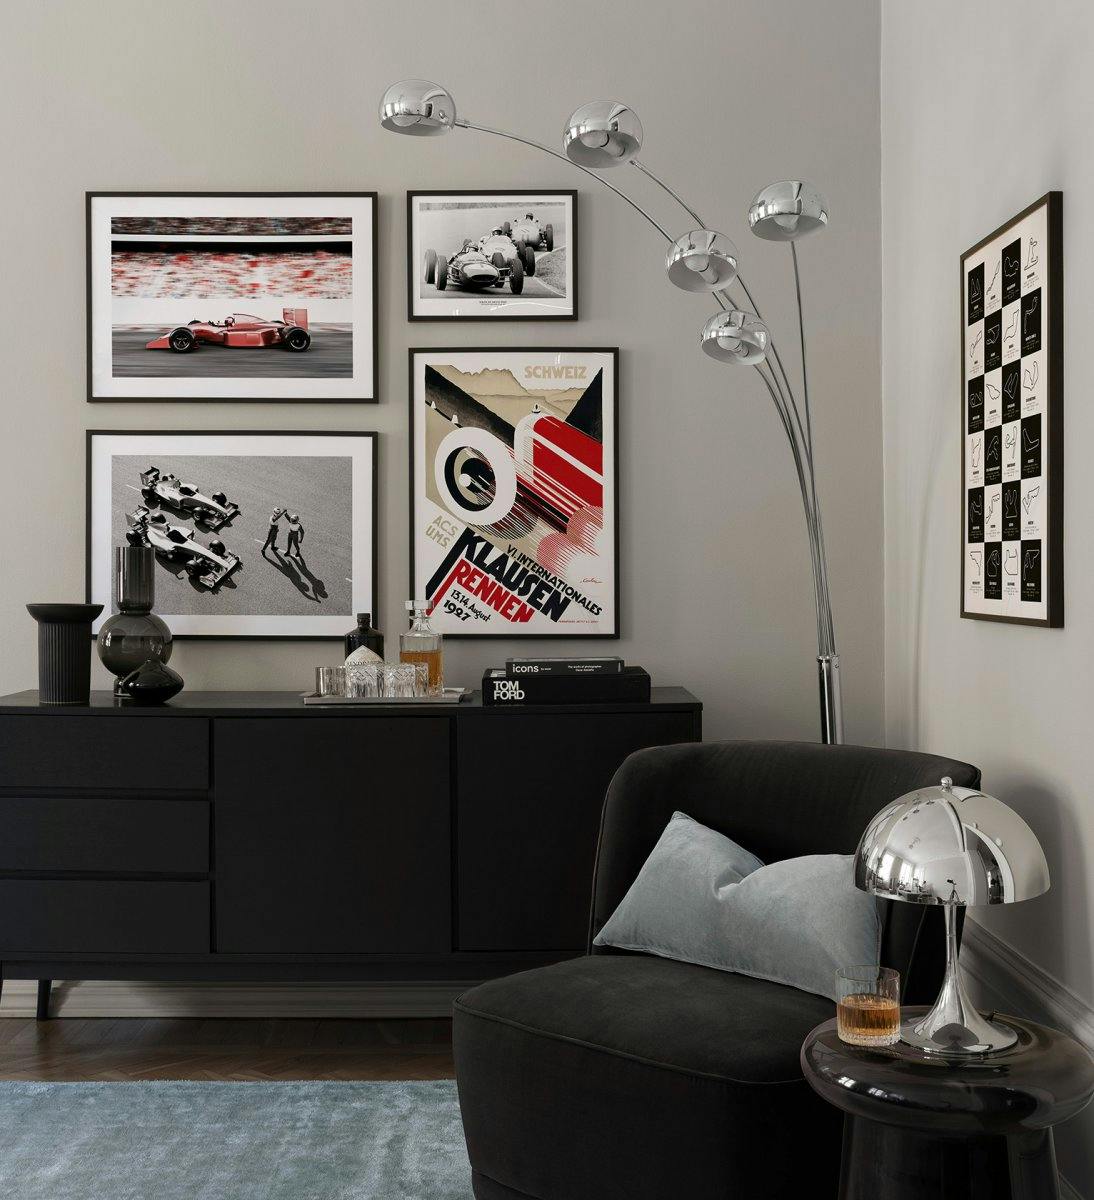 Závodní nástěnná galerie automobilů s fotografiemi a ilustracemi auta Formule 1 s černými dřevěnými rámečky do obývacího pokoje.